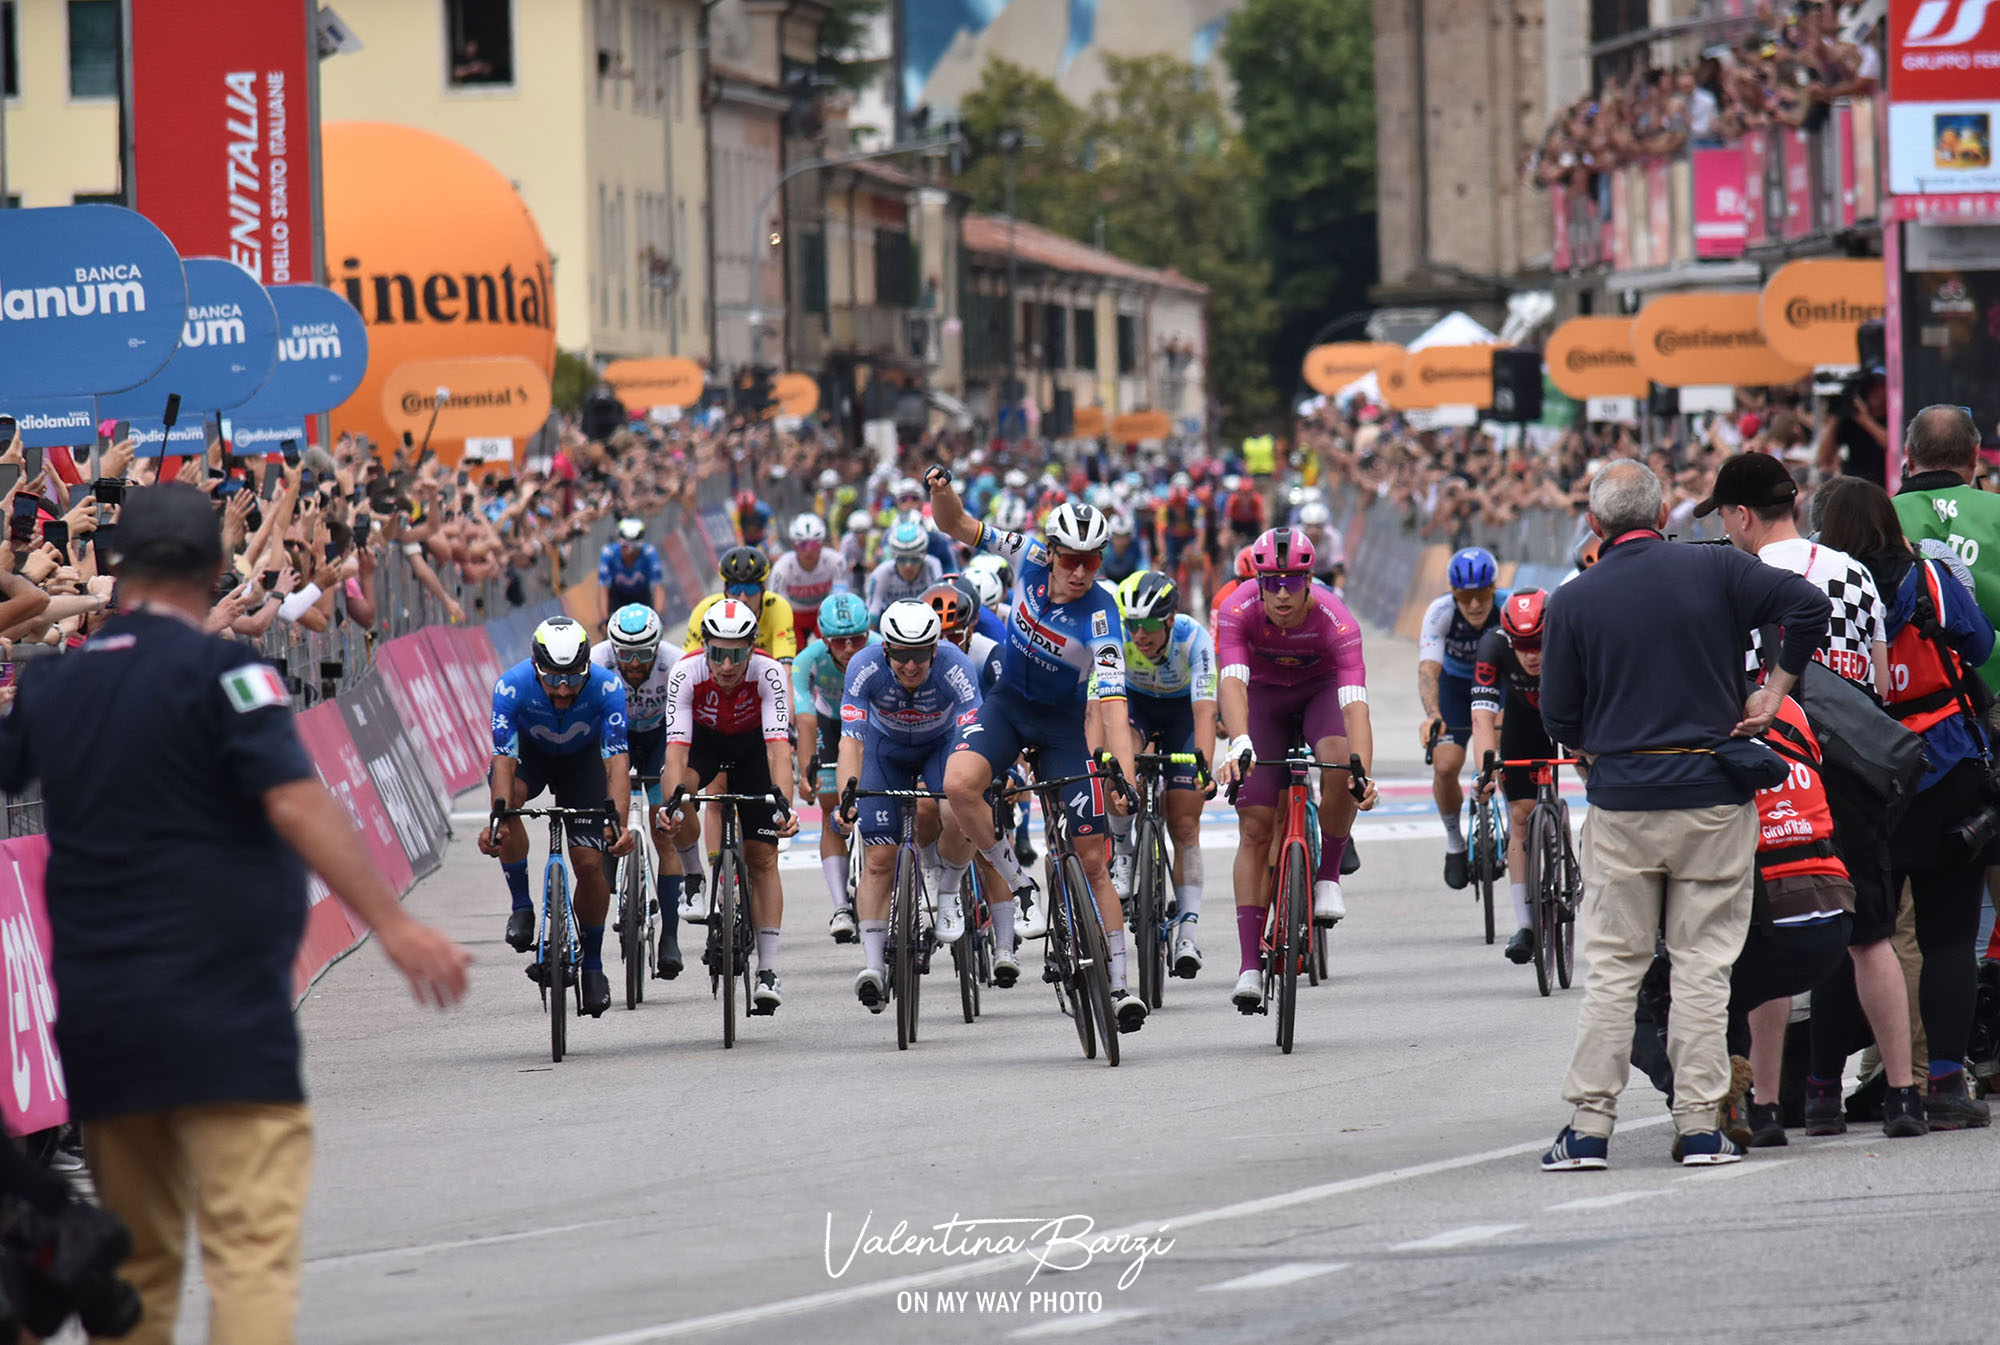 Classement de la 18ème étape du Tour d'Italie, remportée par Tim Merlier